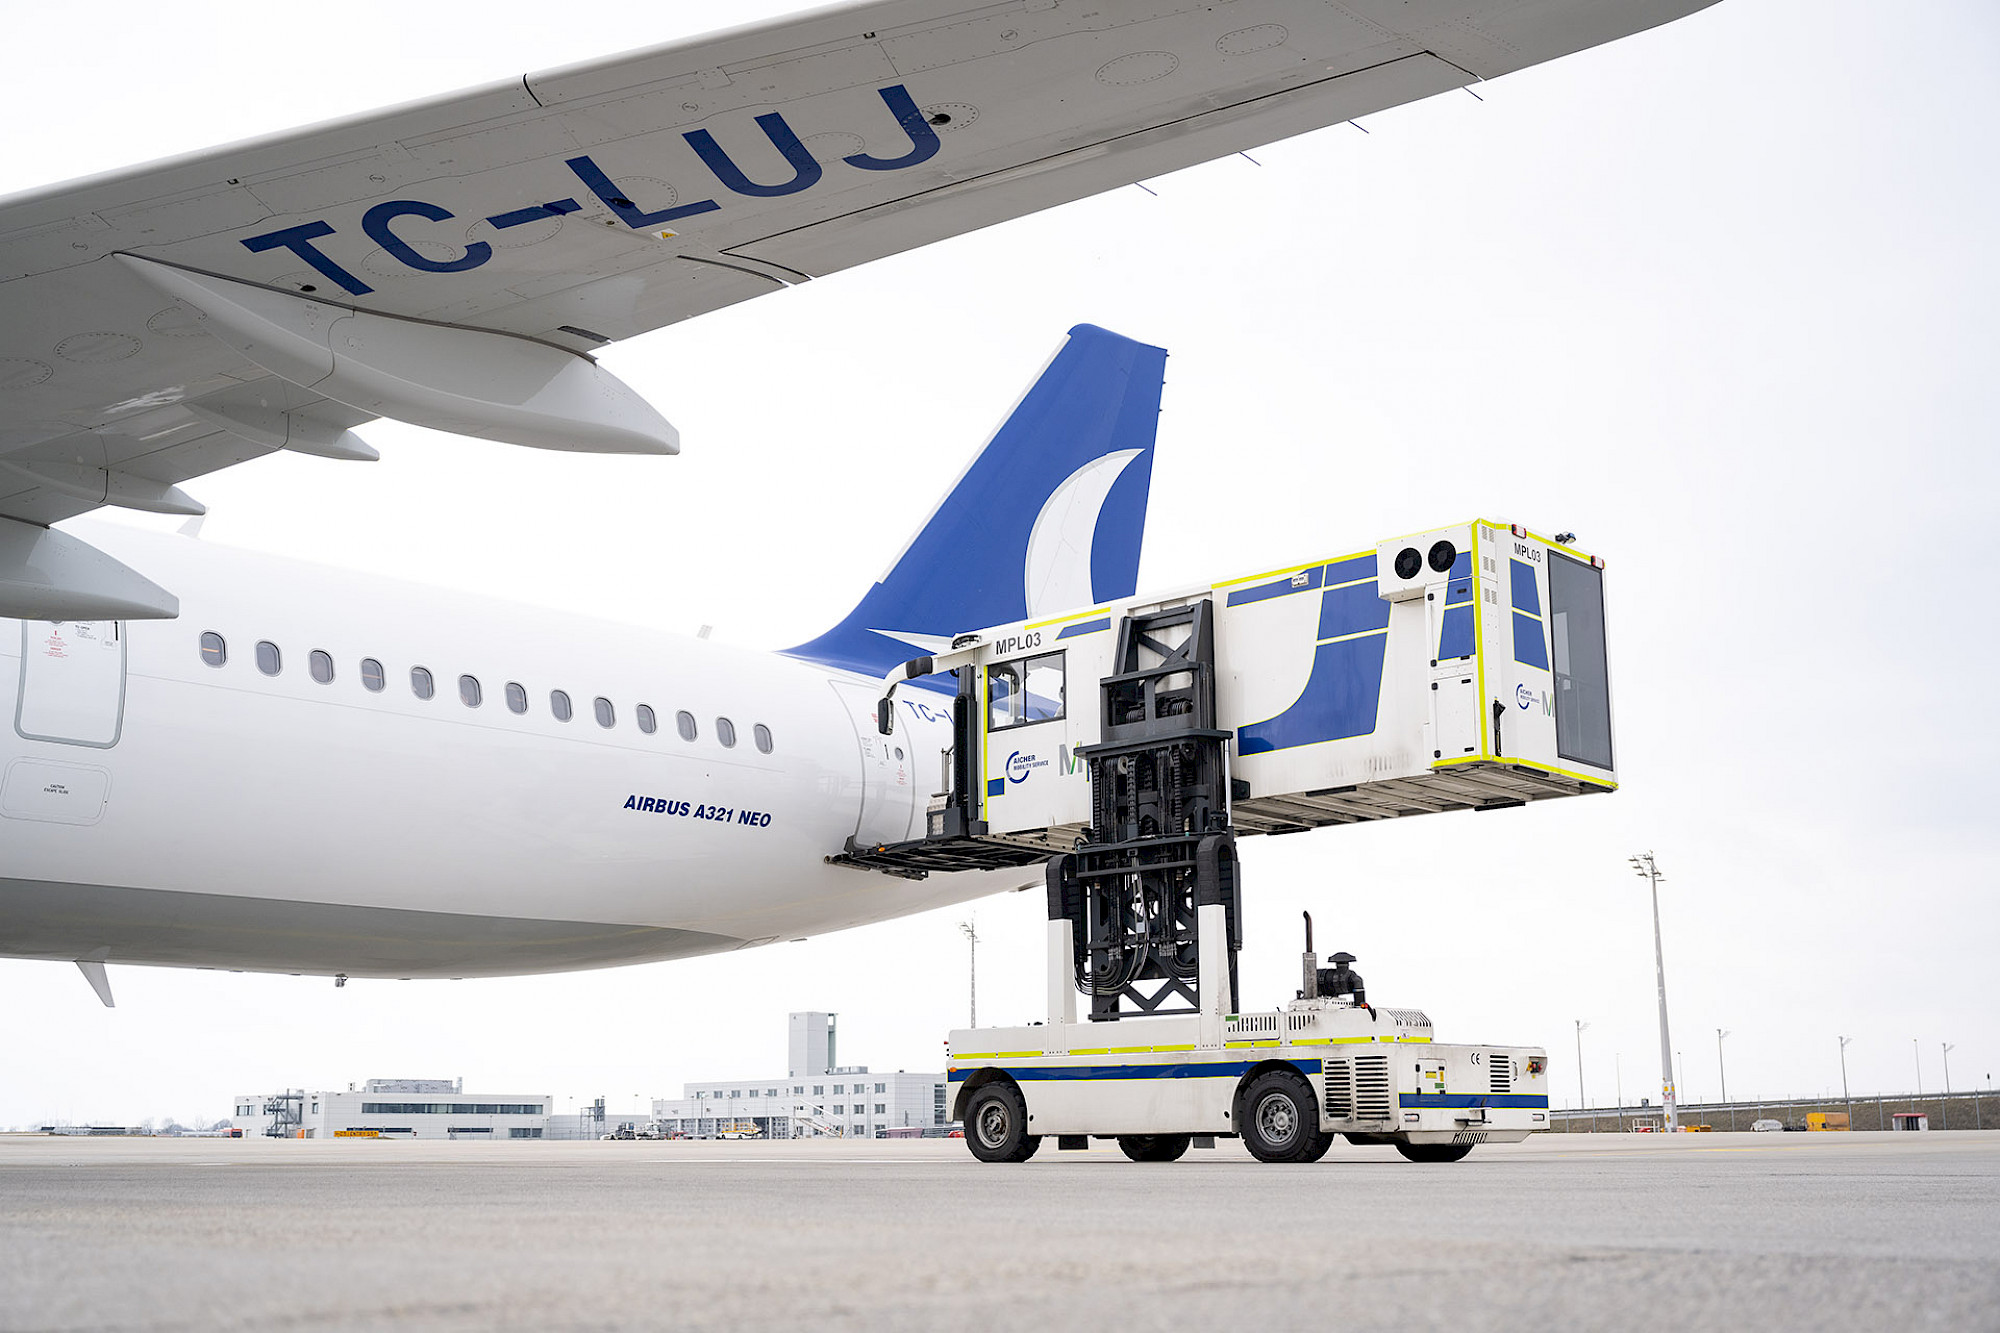 Ein Hublifter für das sichere Anheben von Rollstühlen dockt an den Eingang eines Airbus an.